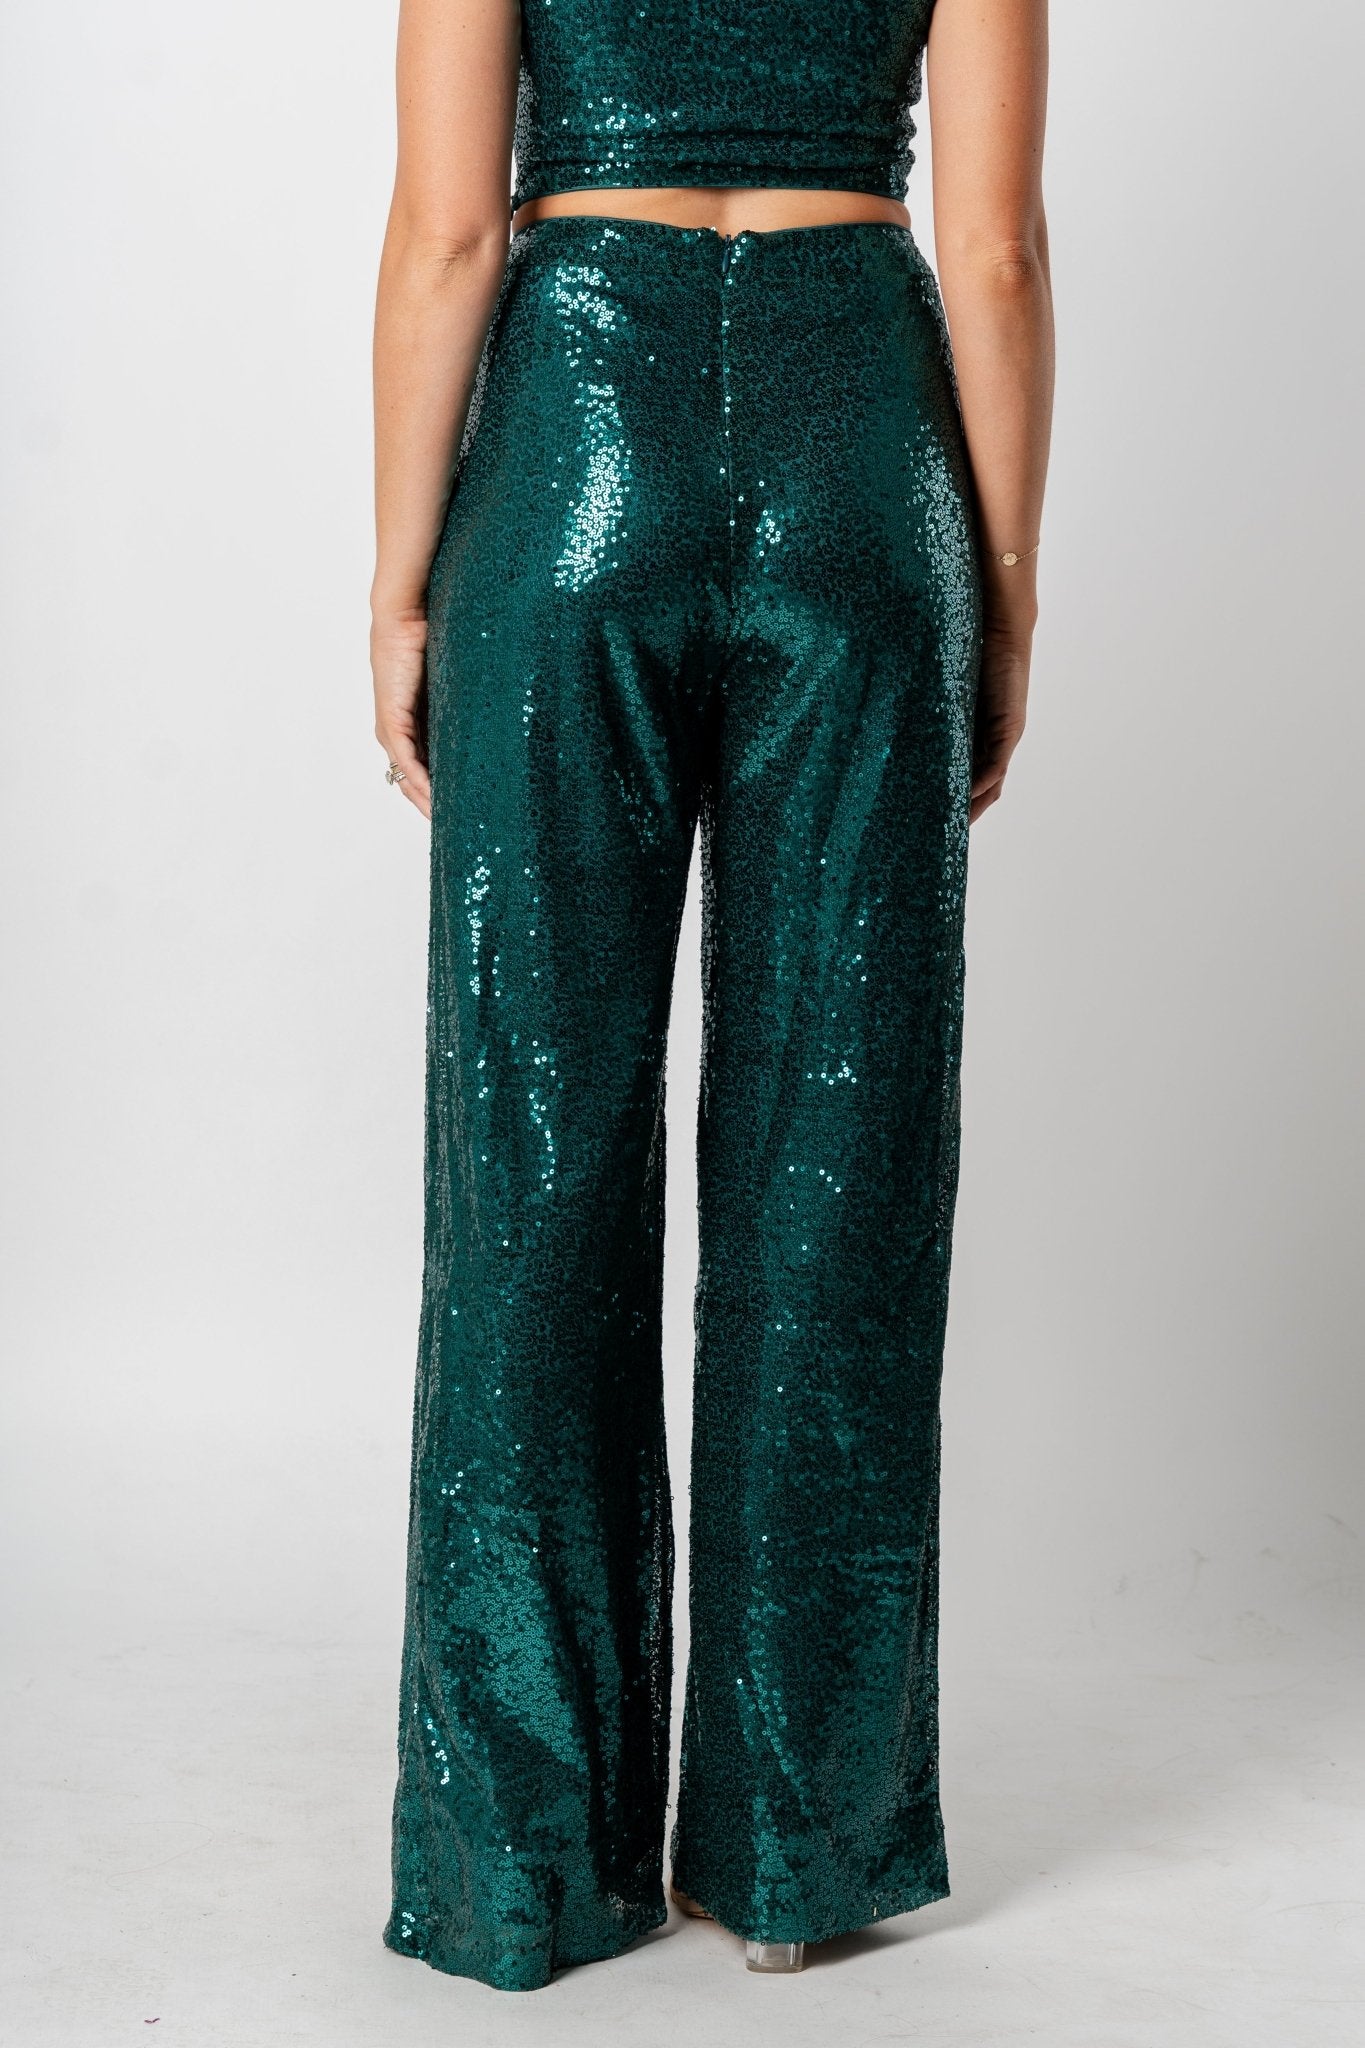 Sequin flare pants dark shiny turquoise | Lush Fashion Lounge: women's boutique pants, boutique women's pants, affordable boutique pants, women's fashion pants